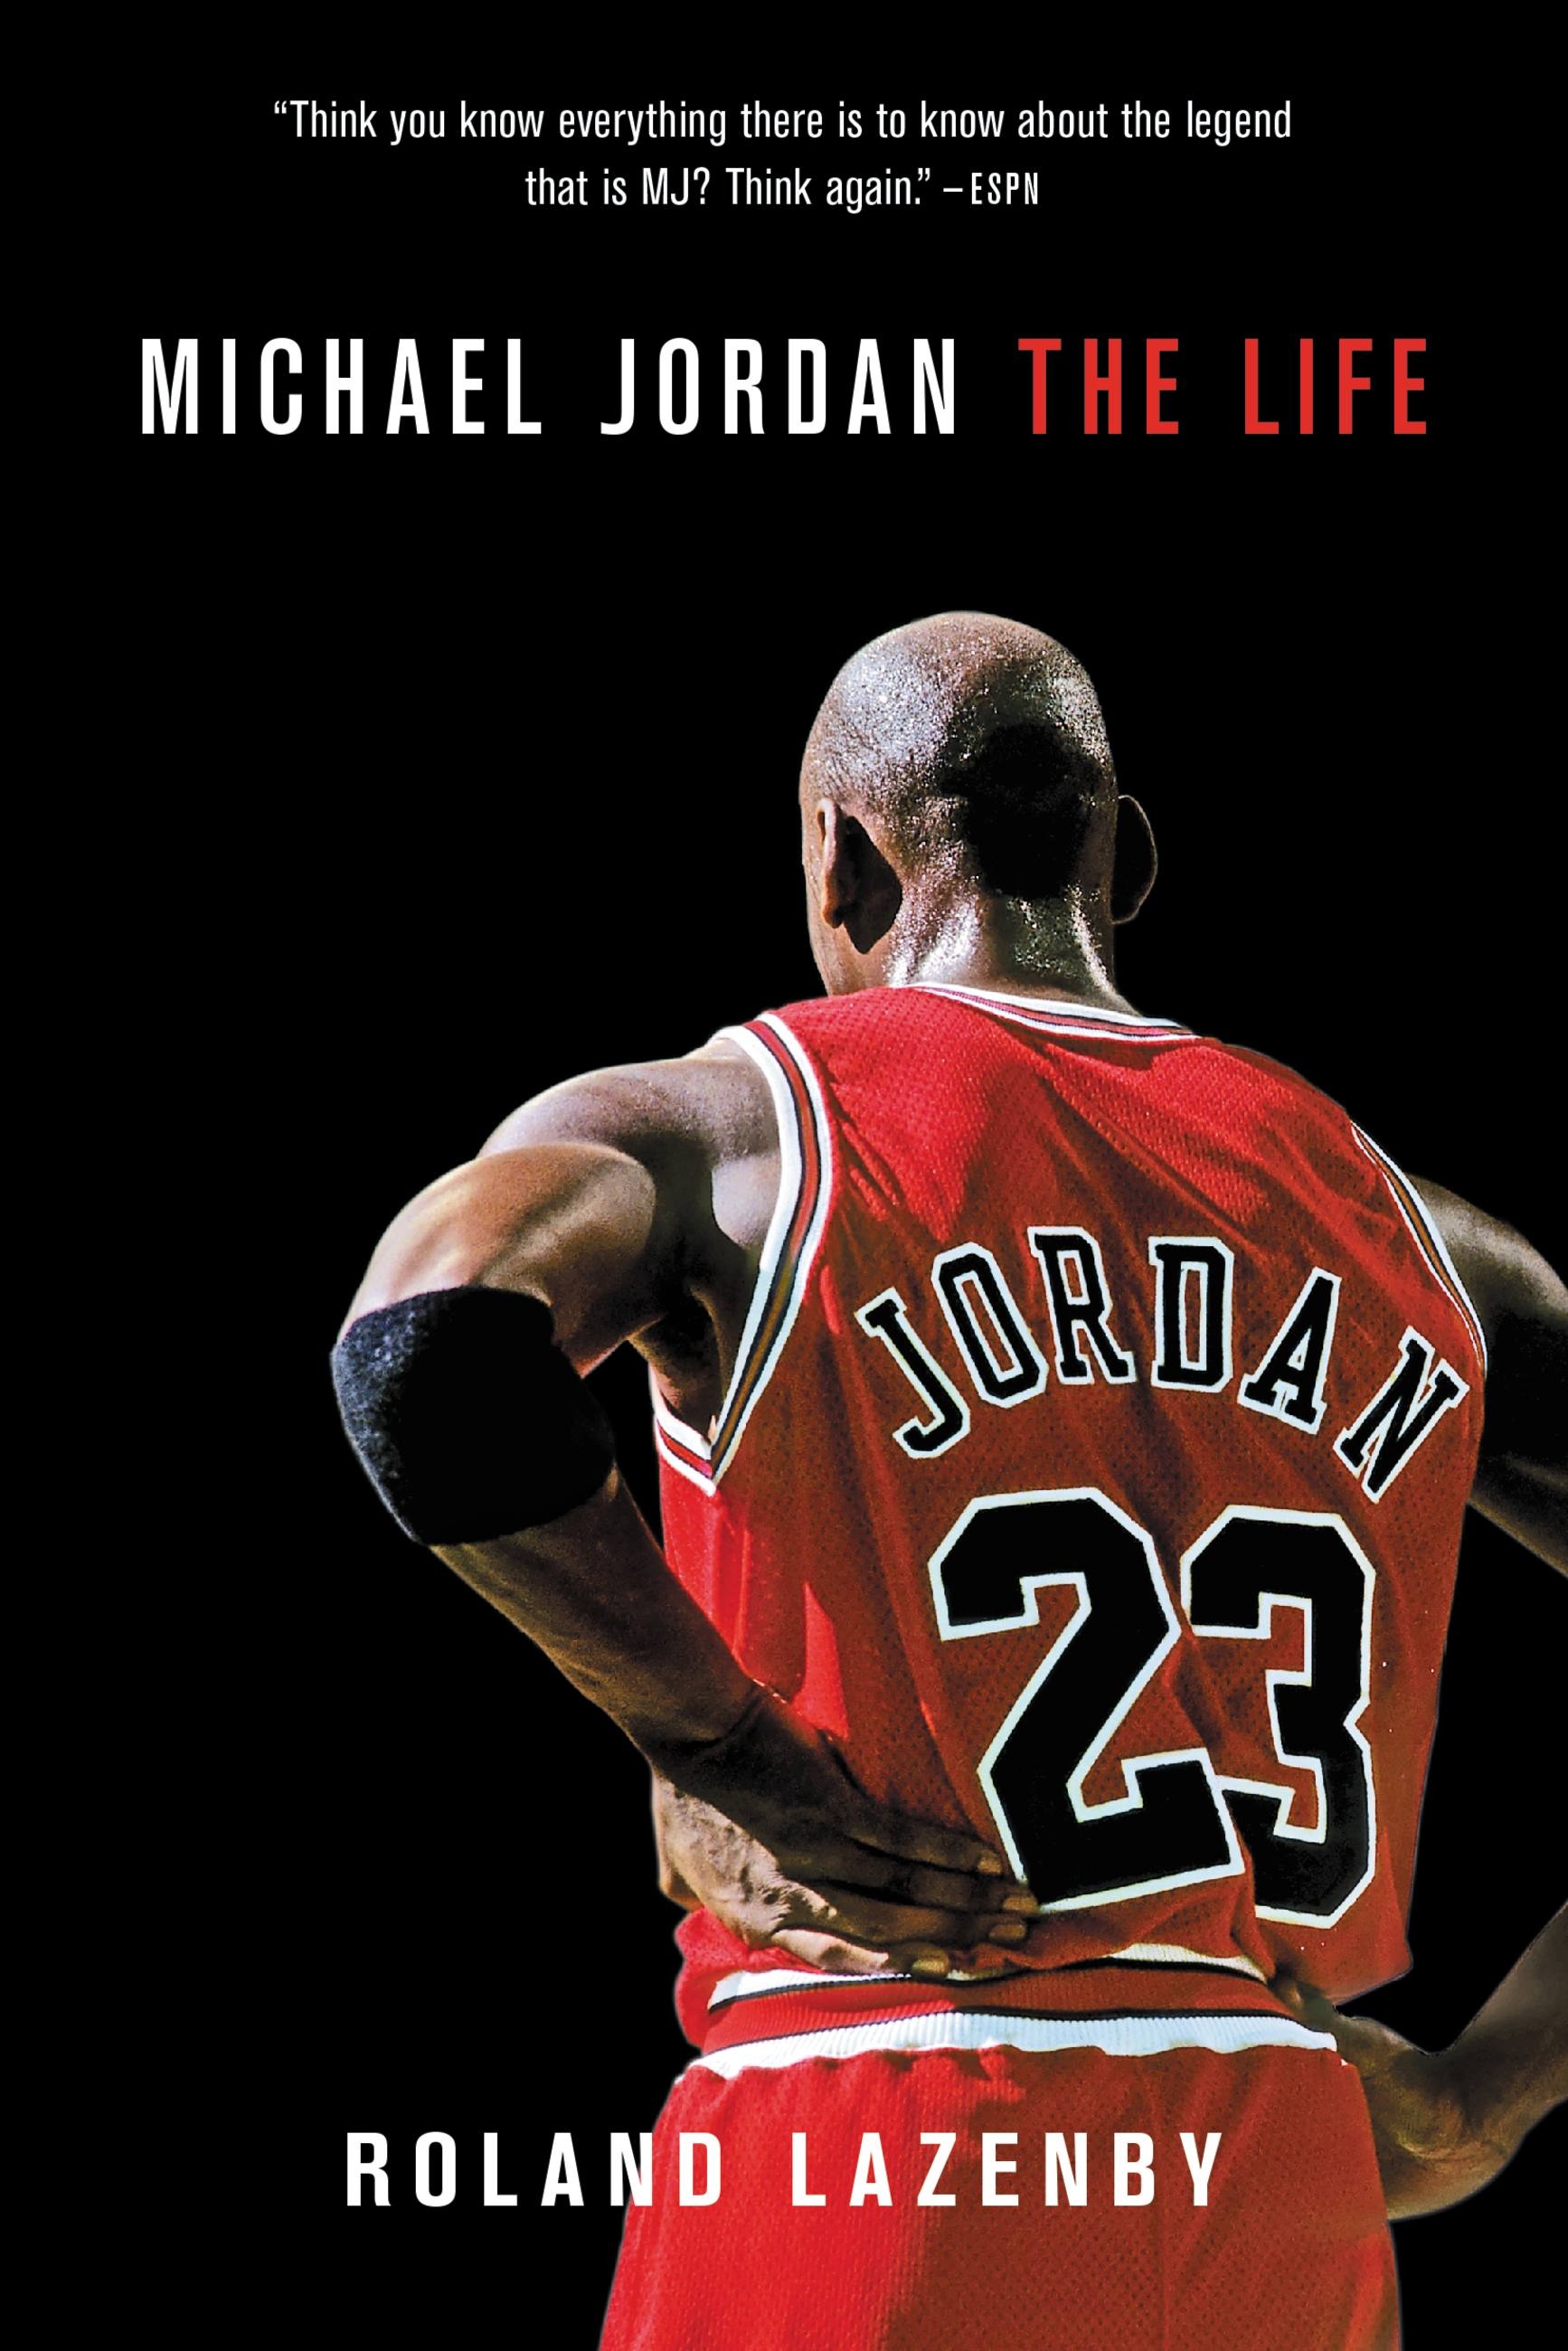 michael jordan biography book